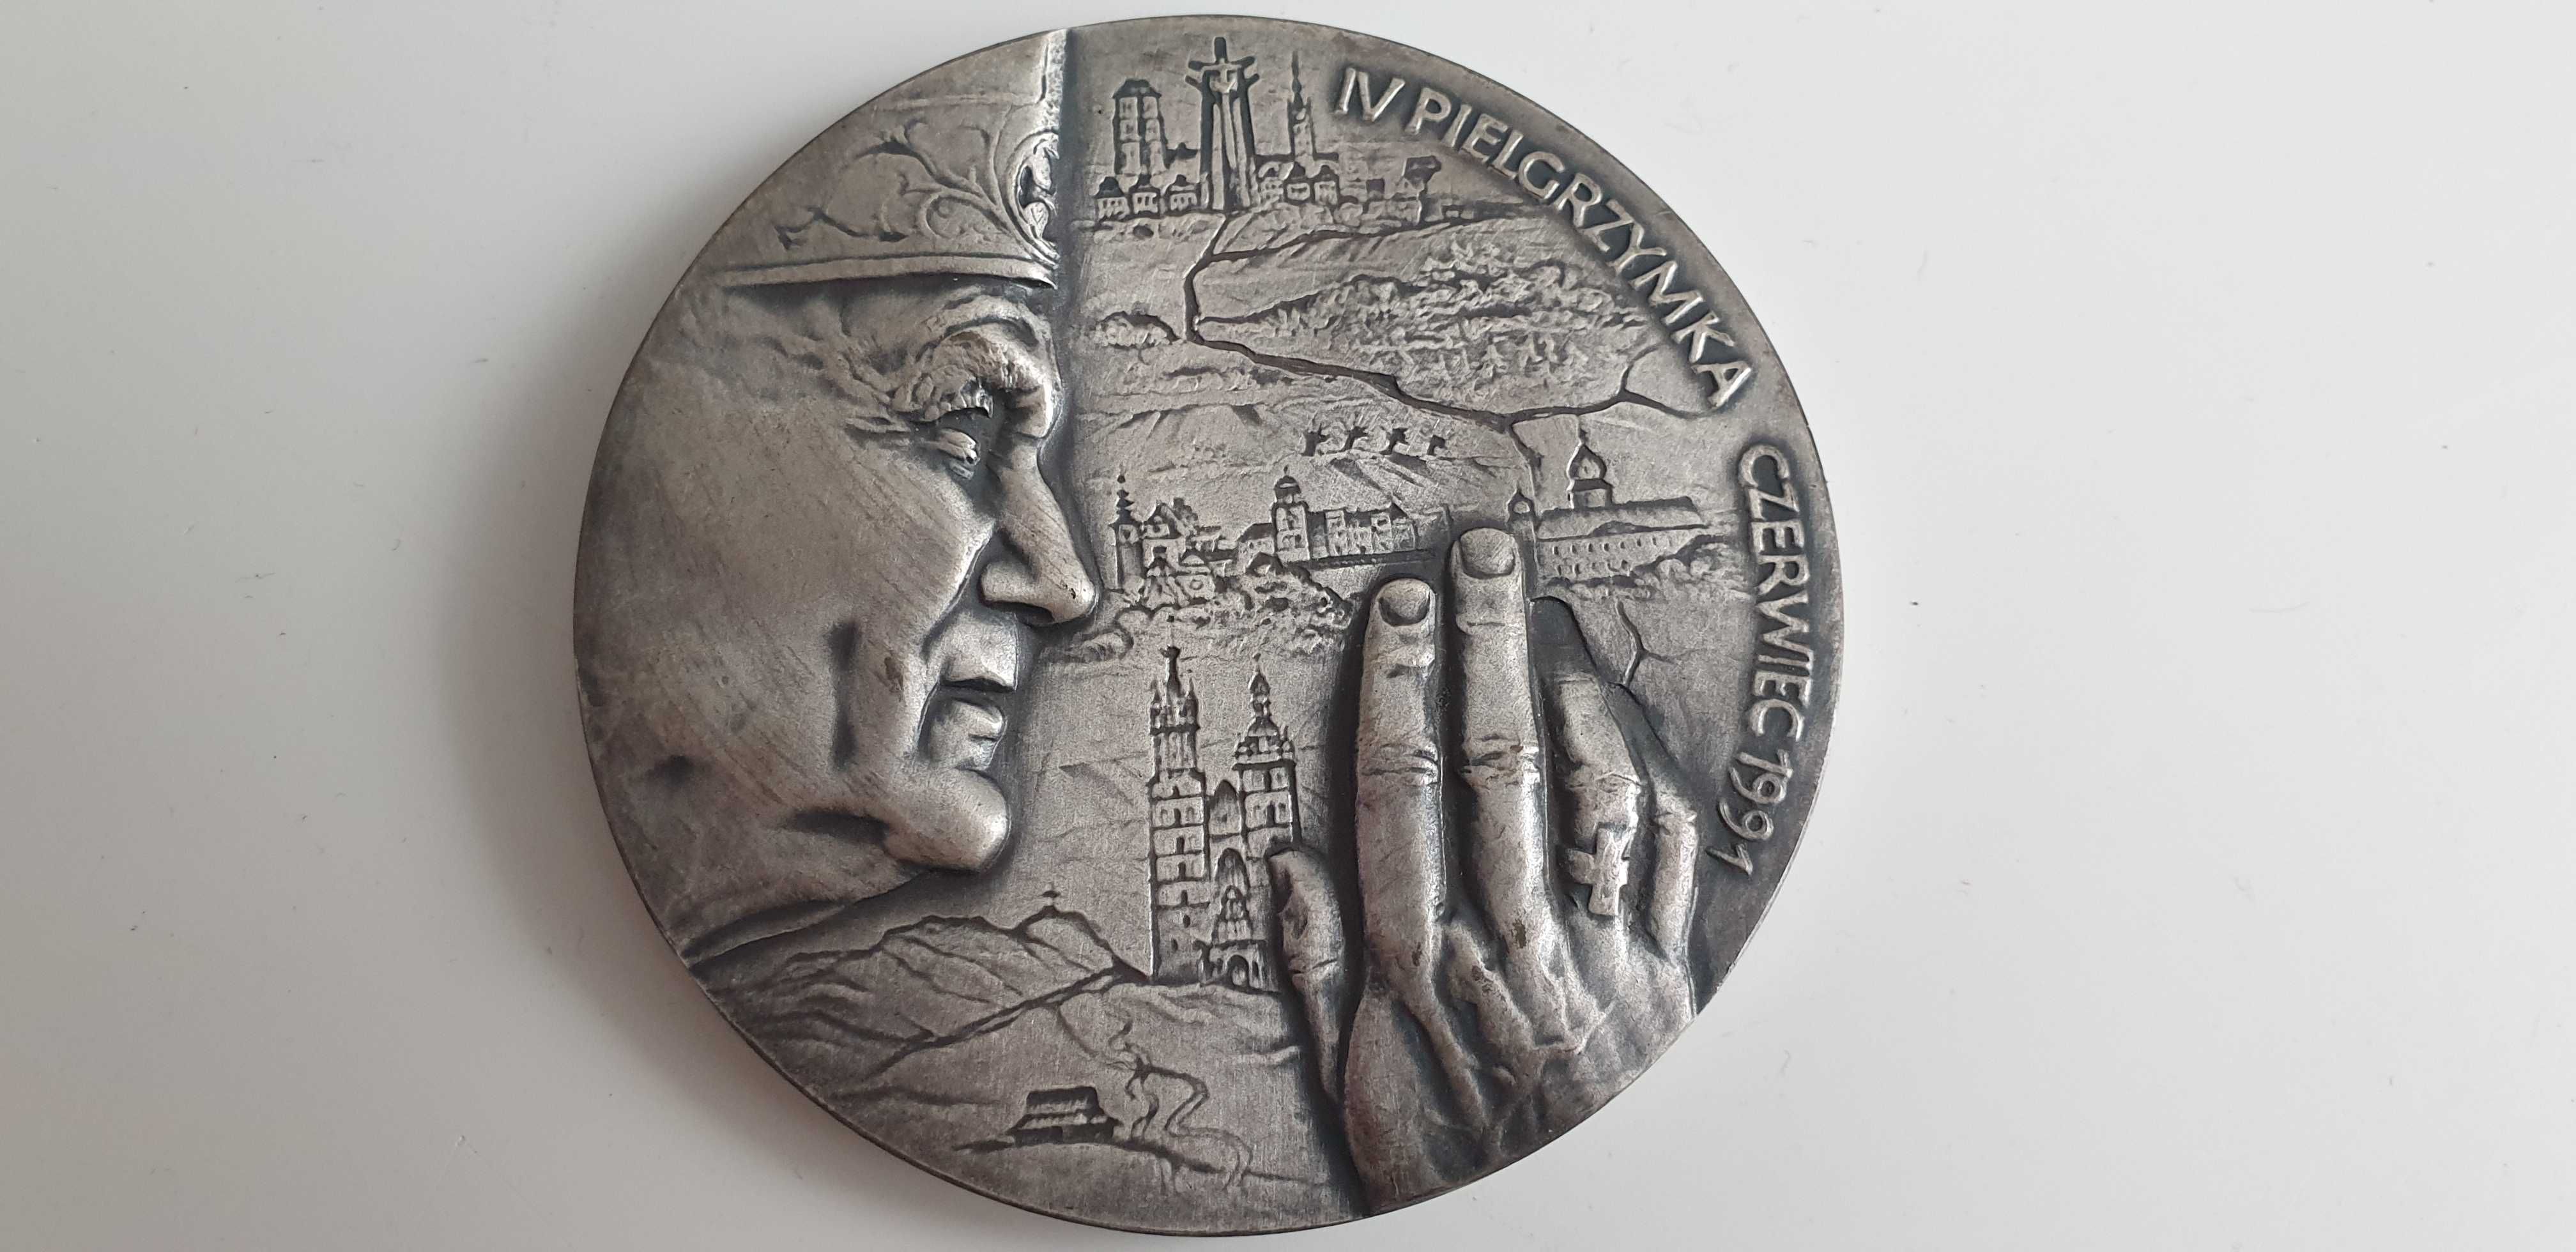 Starocie z Gdyni - Medal Polski numer 9 do rozpoznania